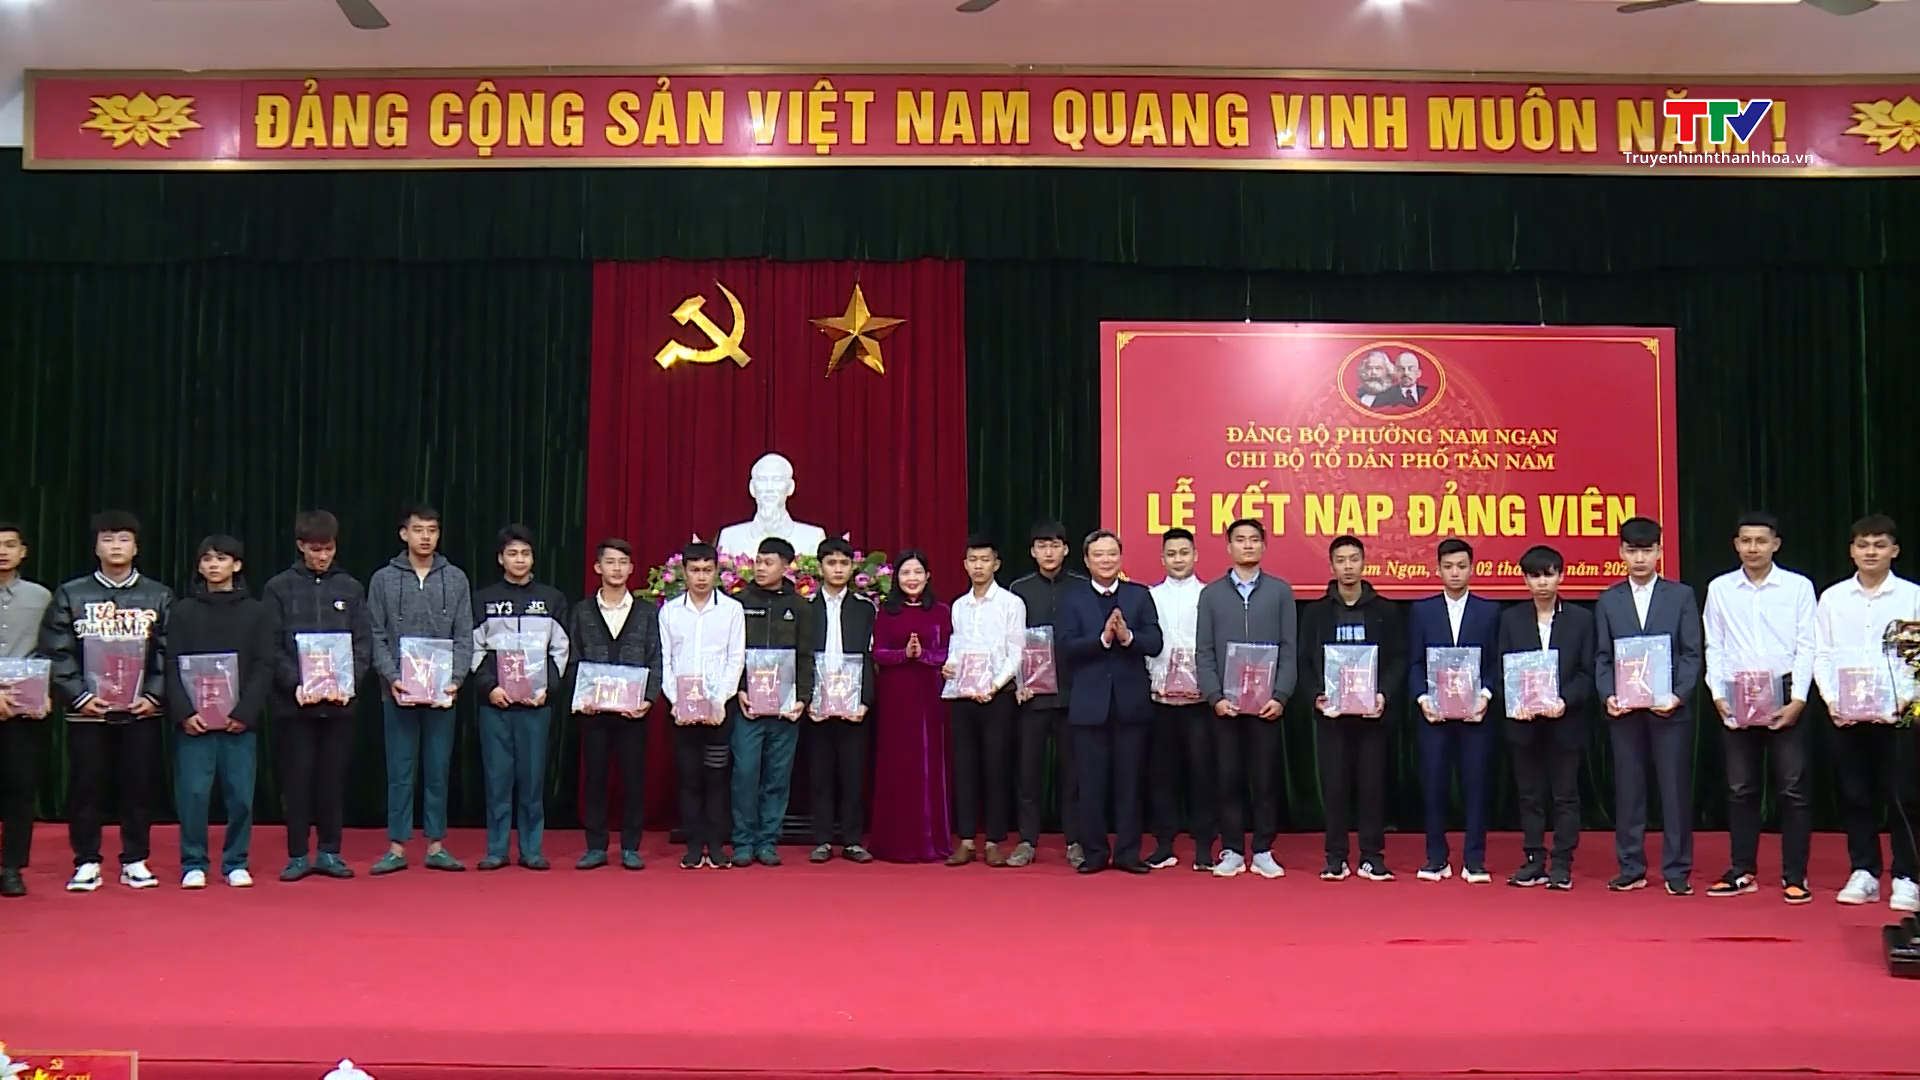 Phó Bí thư Thườnng trực Tỉnh ủy Lại Thế Nguyên dự lễ kết nạp đảng viên tại Chi bộ Tổ dân phố Tân Nam, thành phố Thanh Hóa- Ảnh 6.